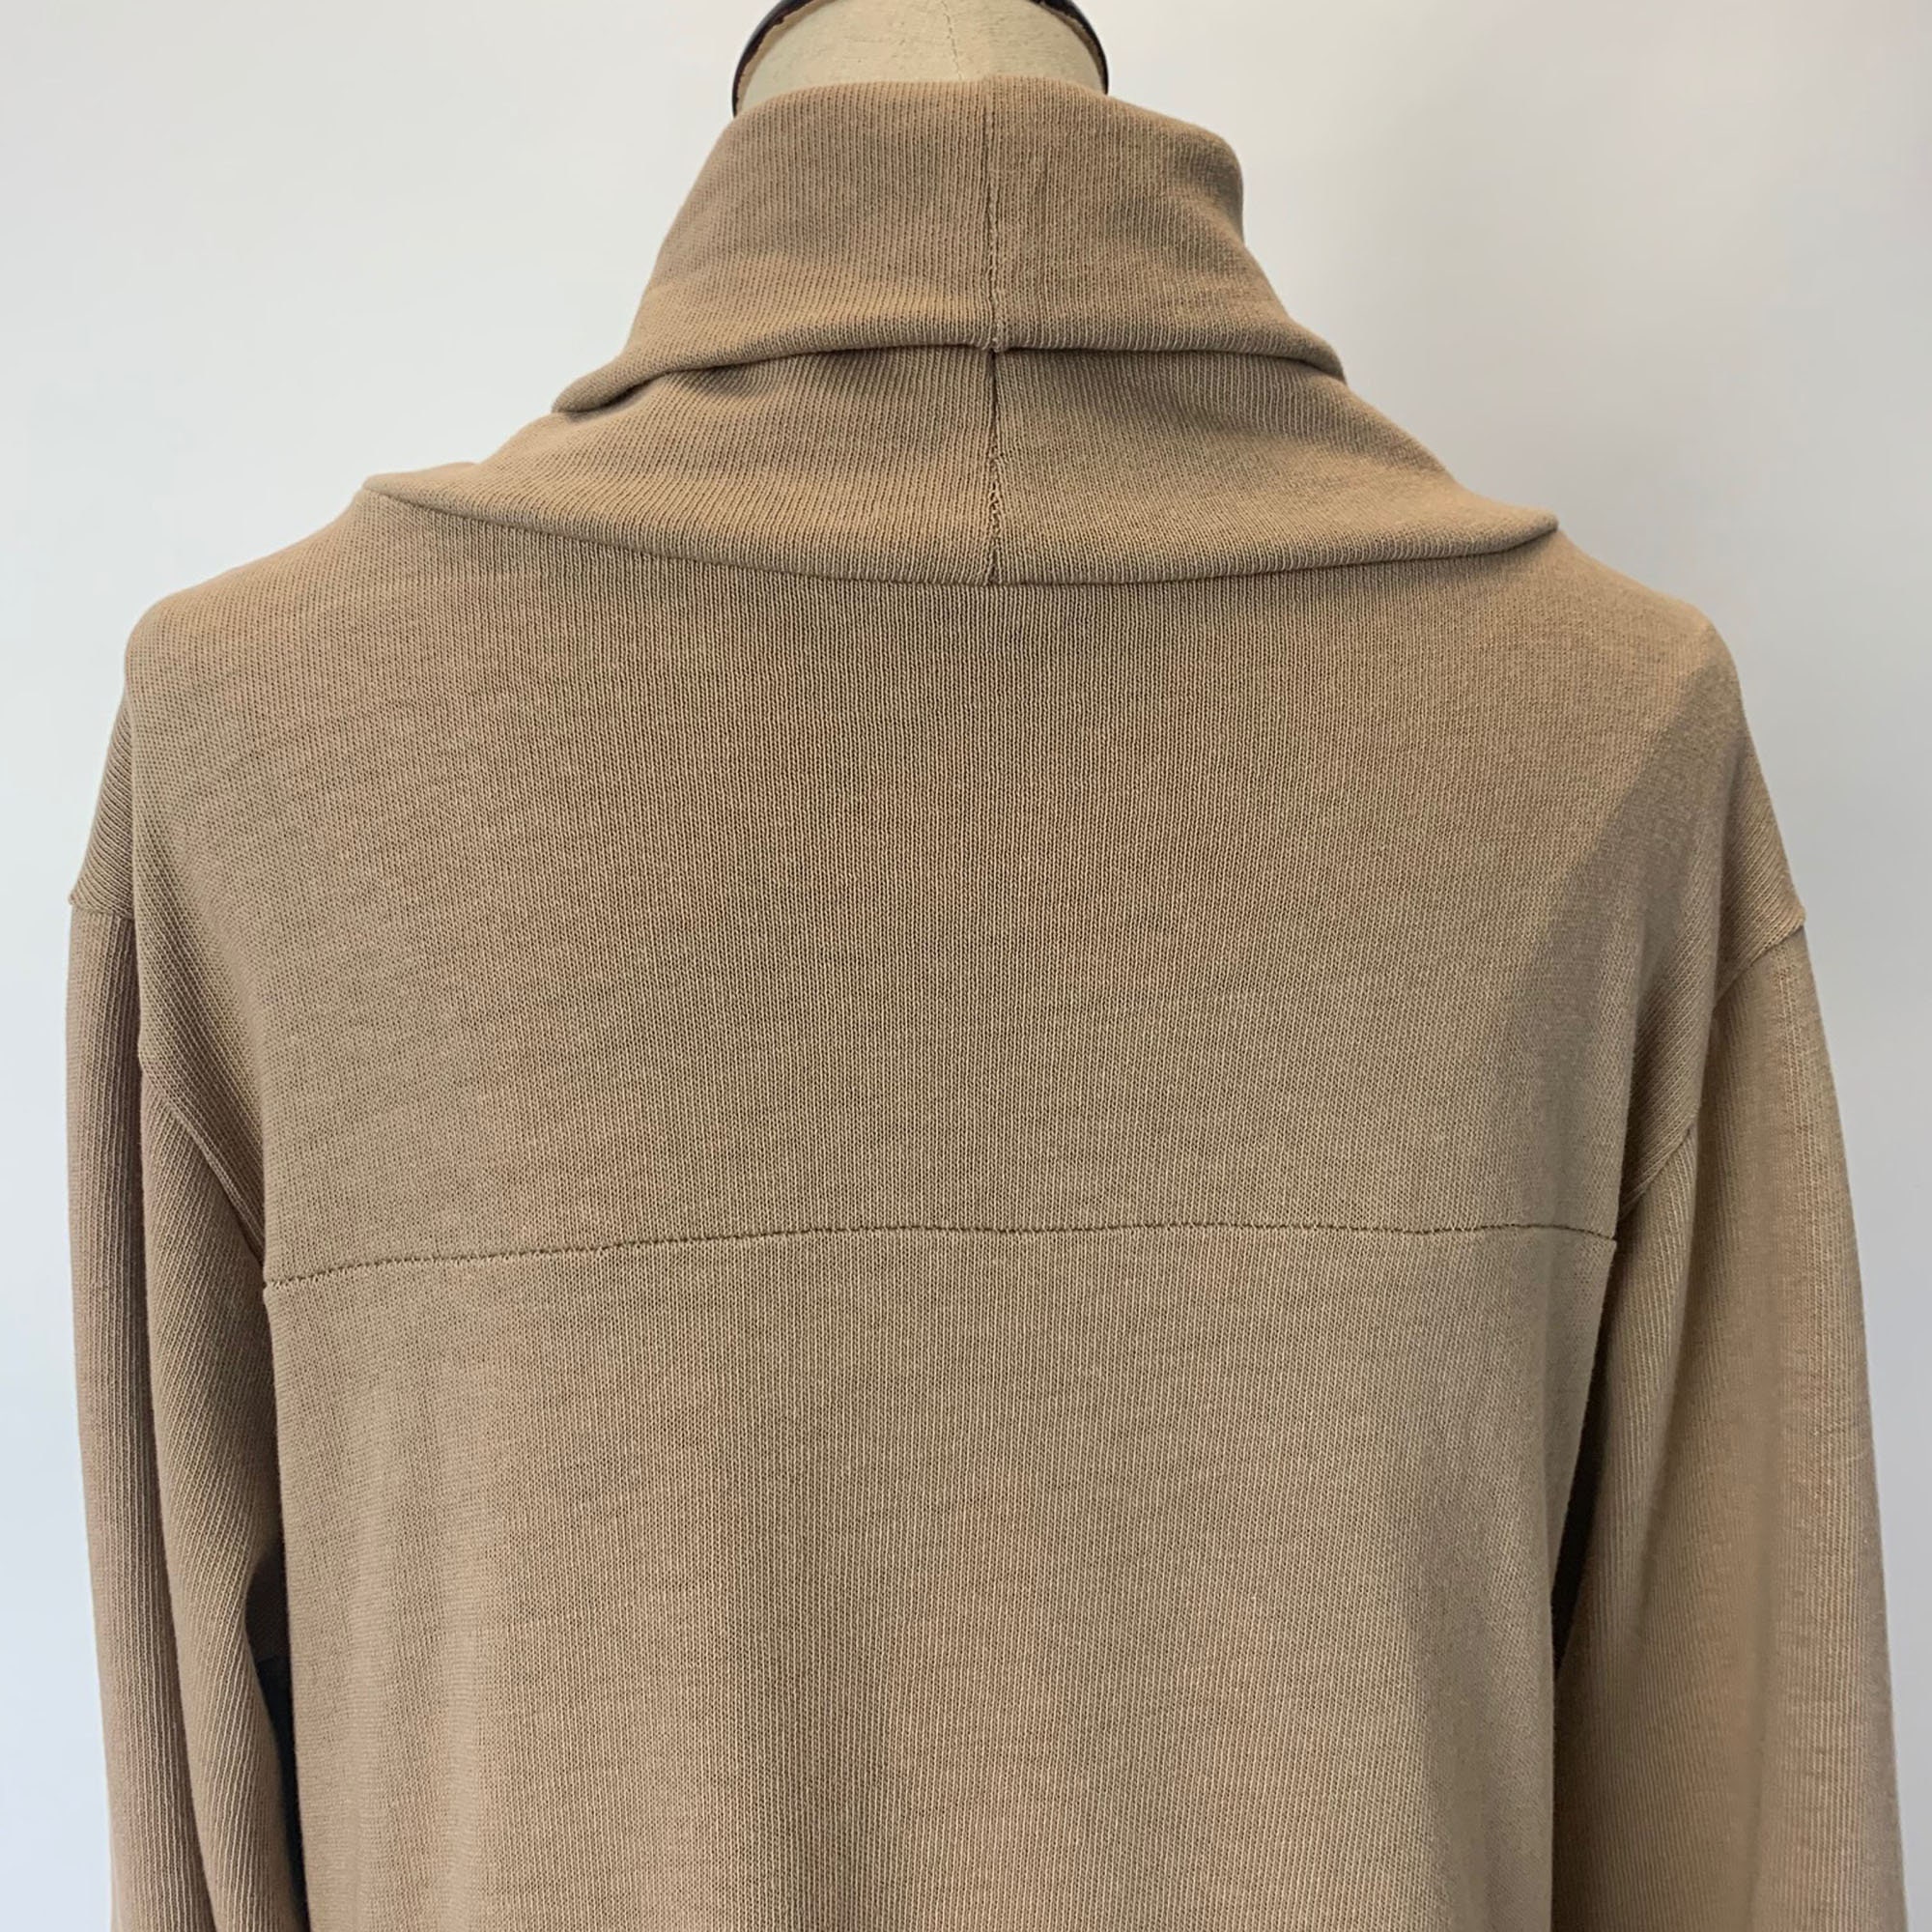 Trish Newbery Design Echo Longline Split Front Sweater - Etsy